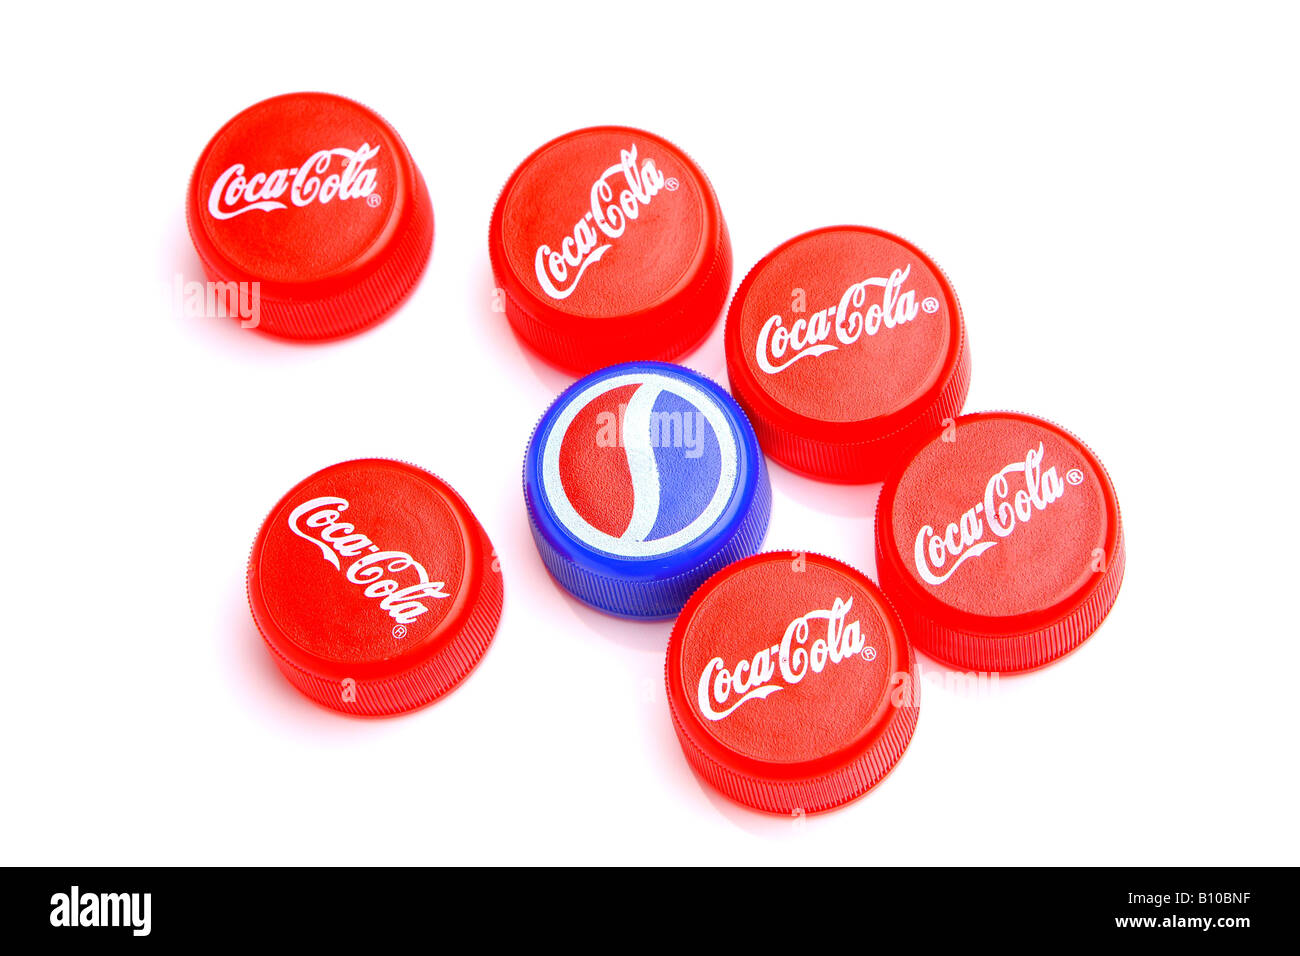 Bottiglie Di Pepsi Immagini e Fotos Stock - Alamy